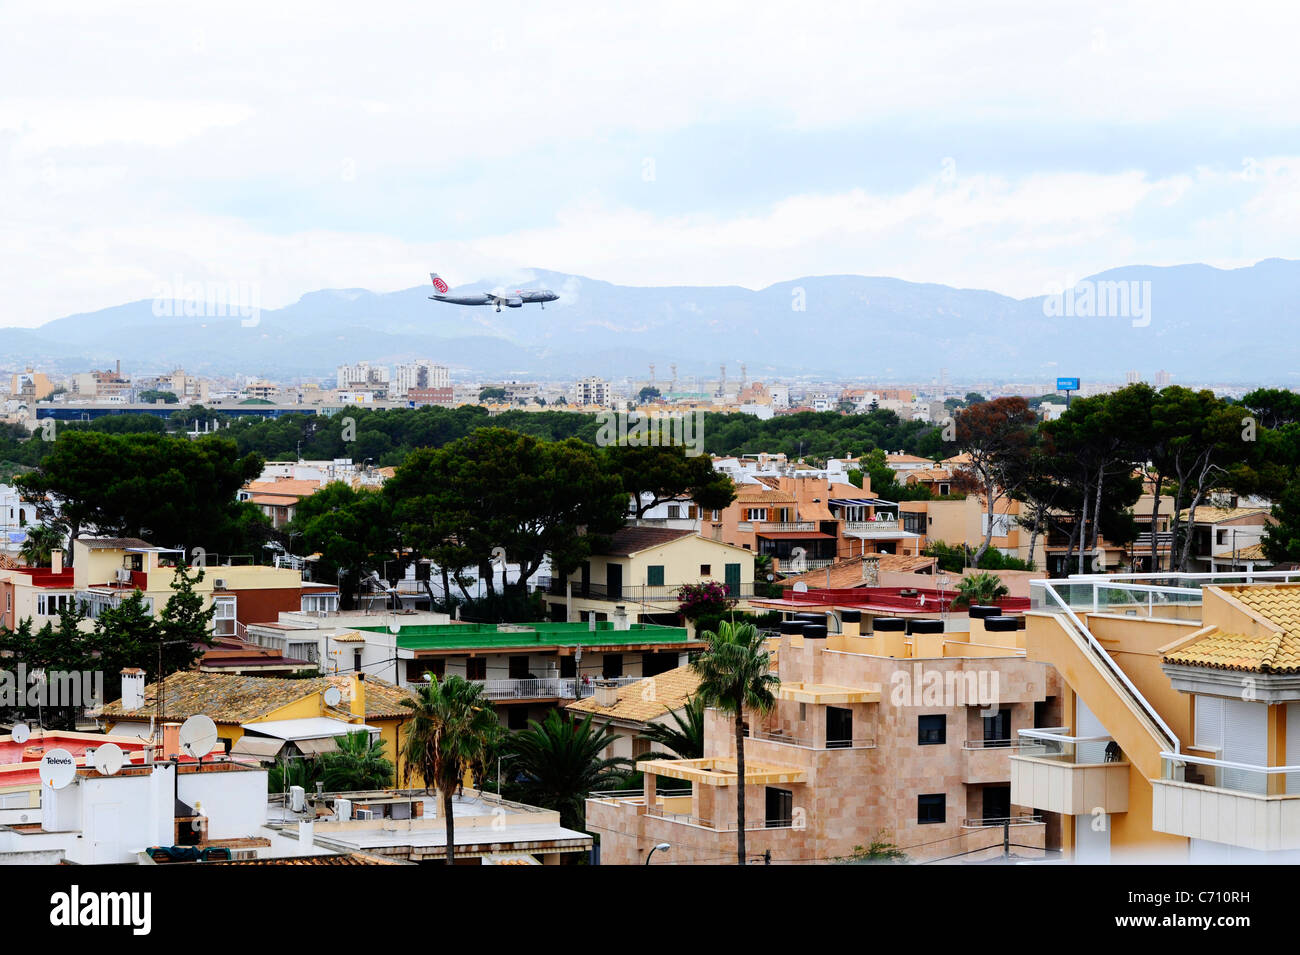 A NIKI aircraft coming in to land at Palma Airport, Mallorca Stock Photo